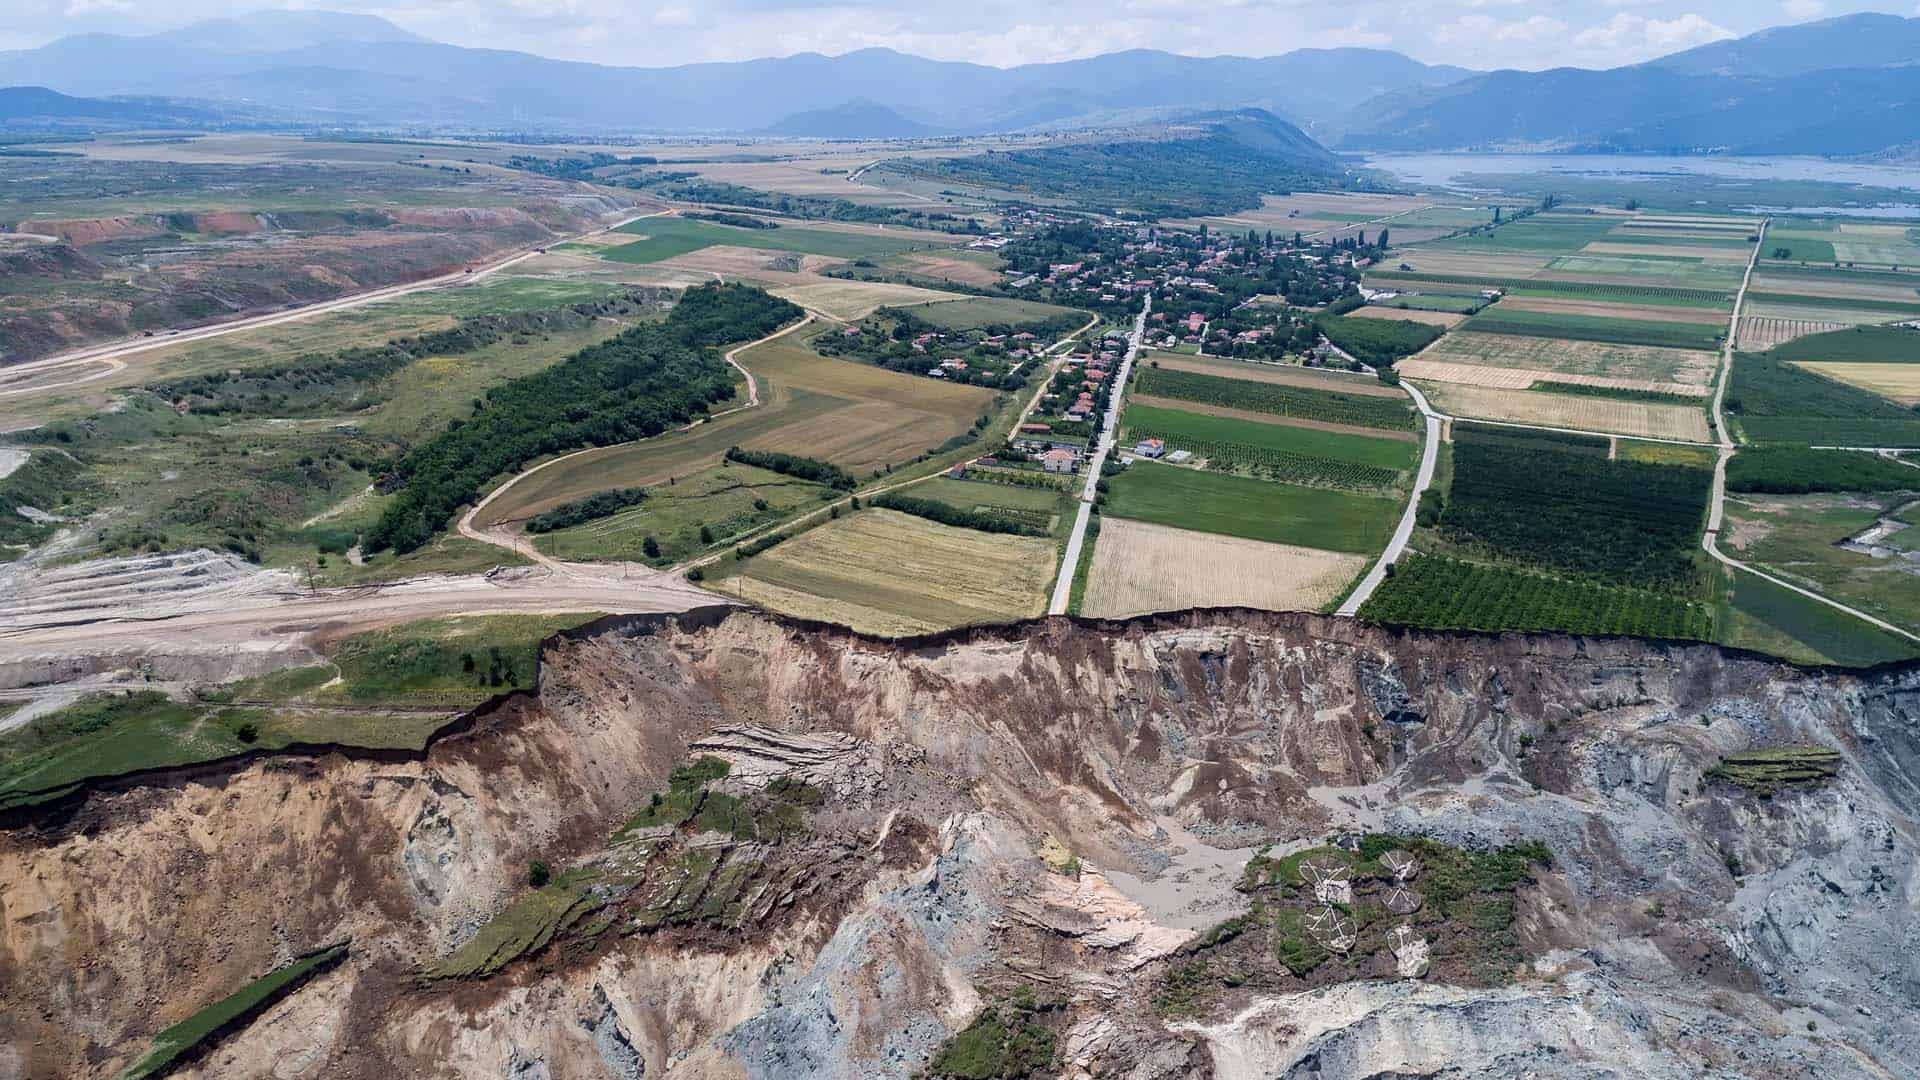 Image showing the Anargyroi mine landslide